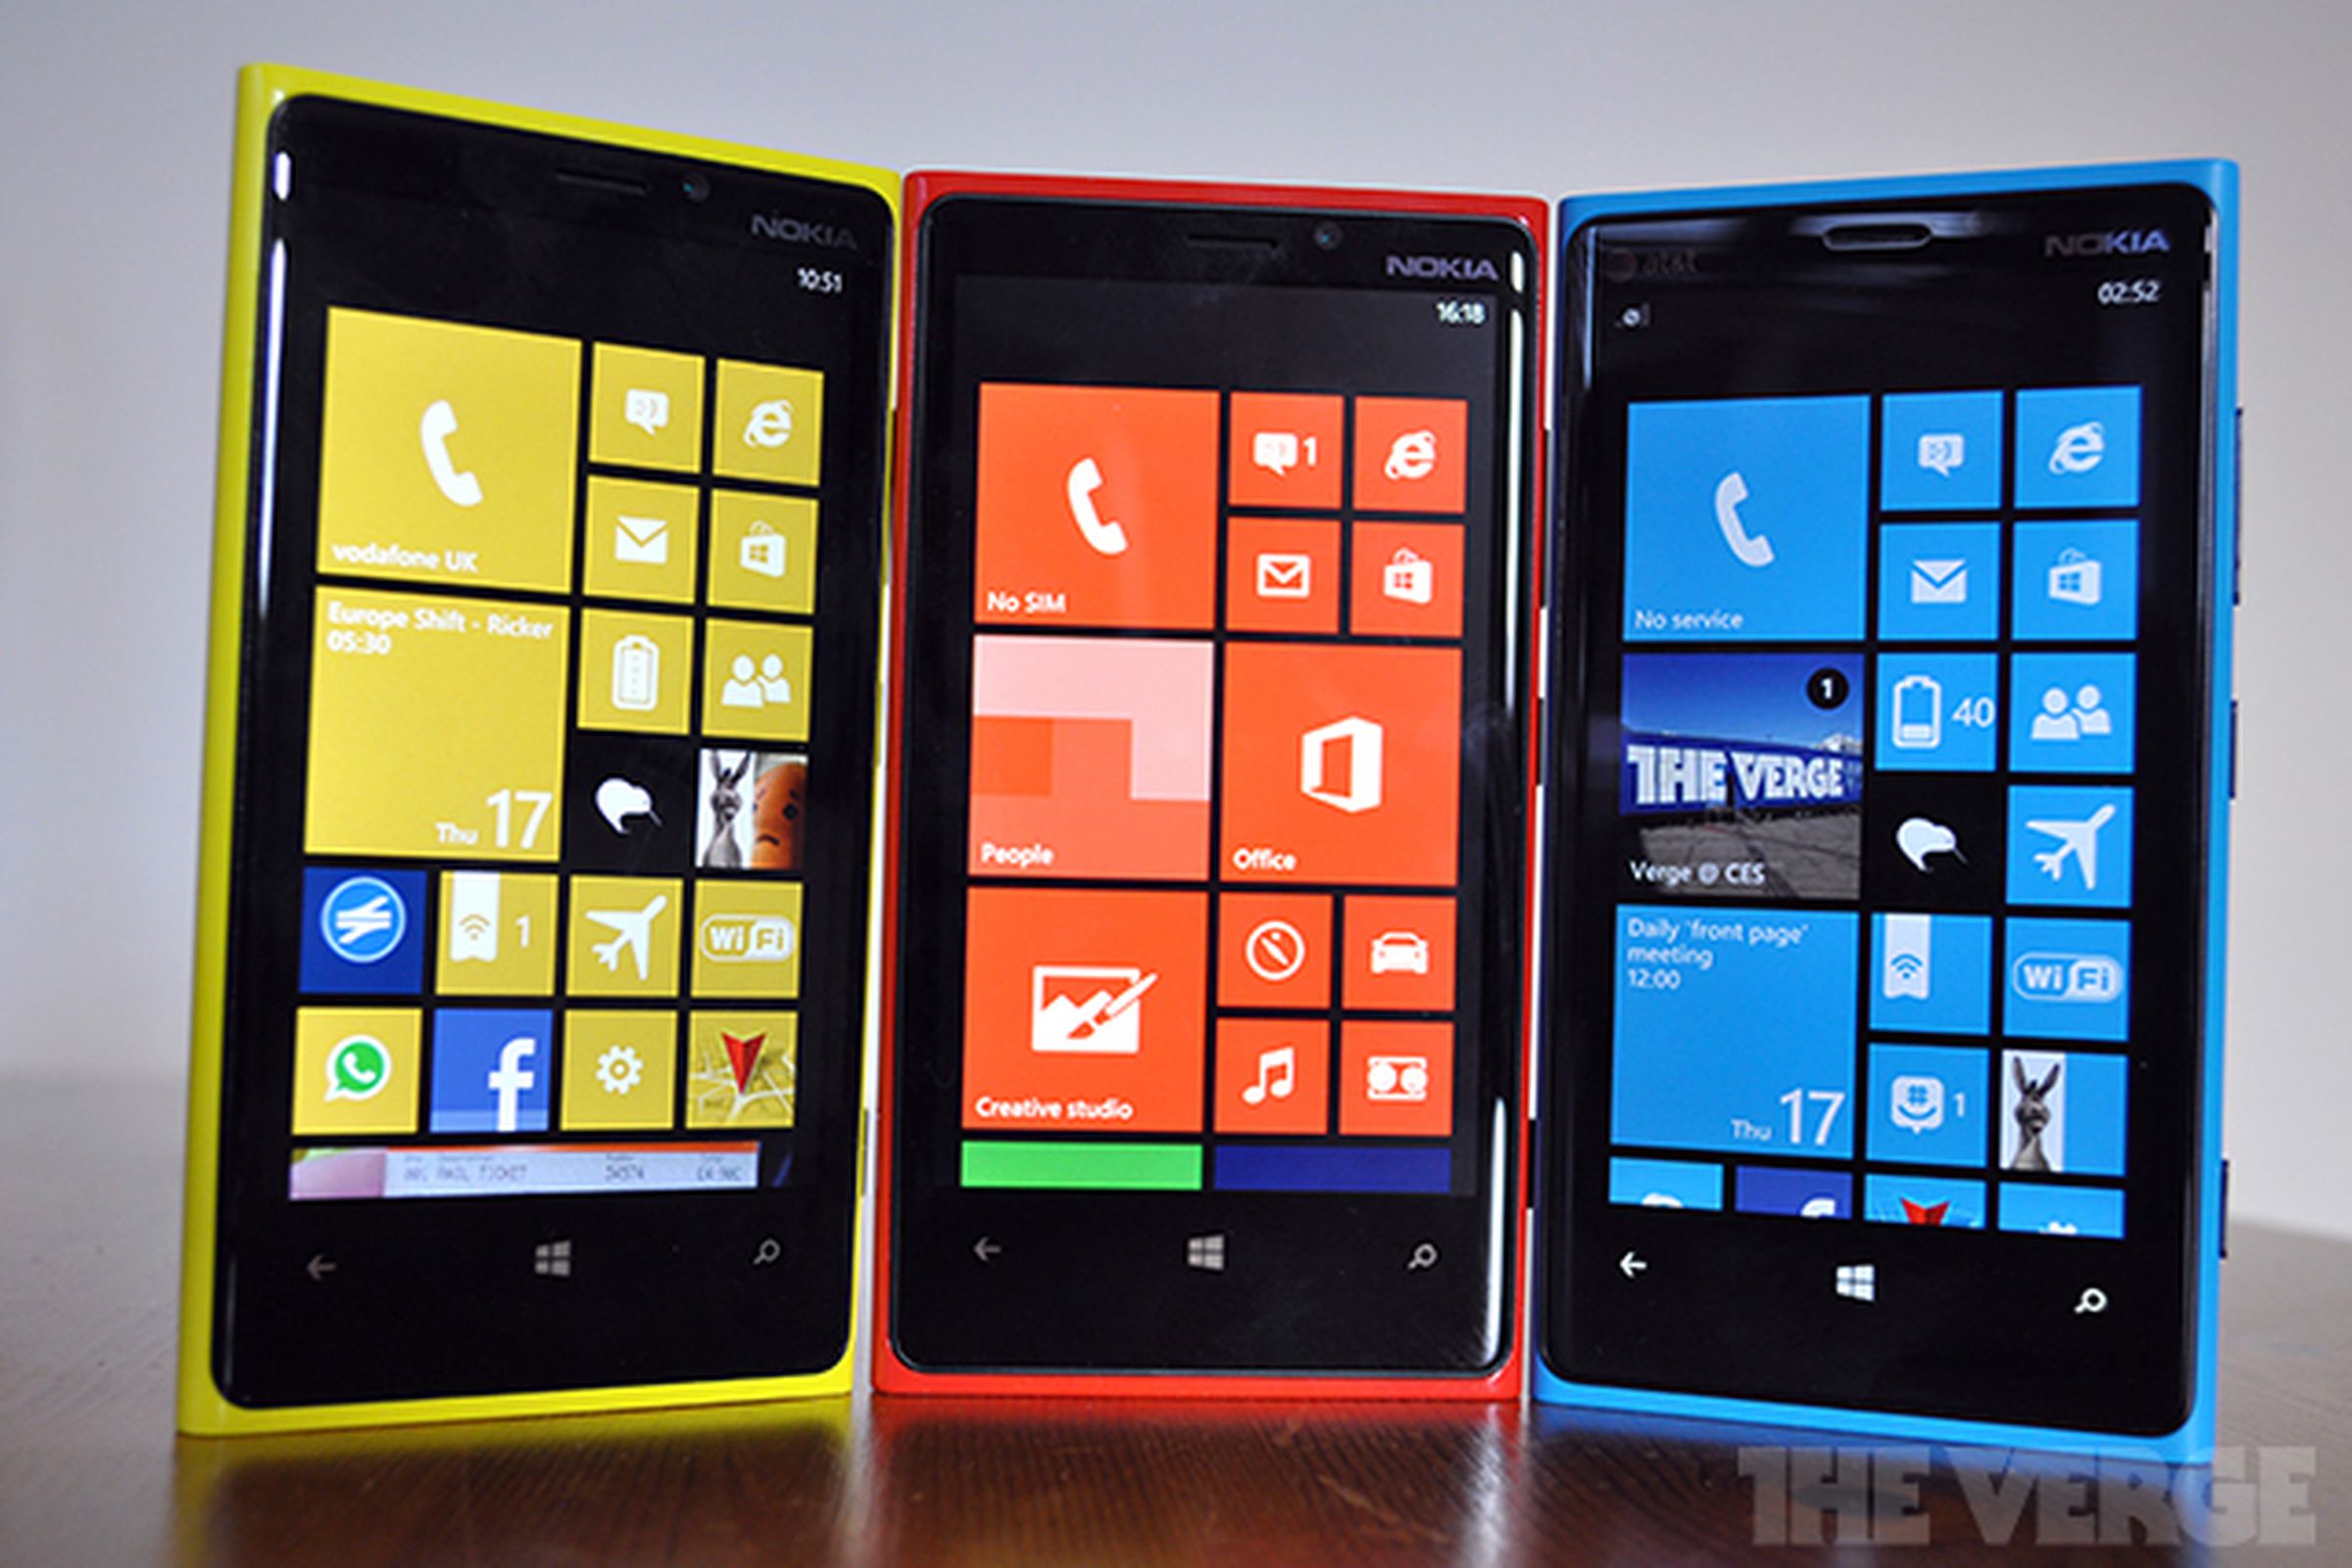 Nokia Lumia 920 Windows Phone 8 stock front